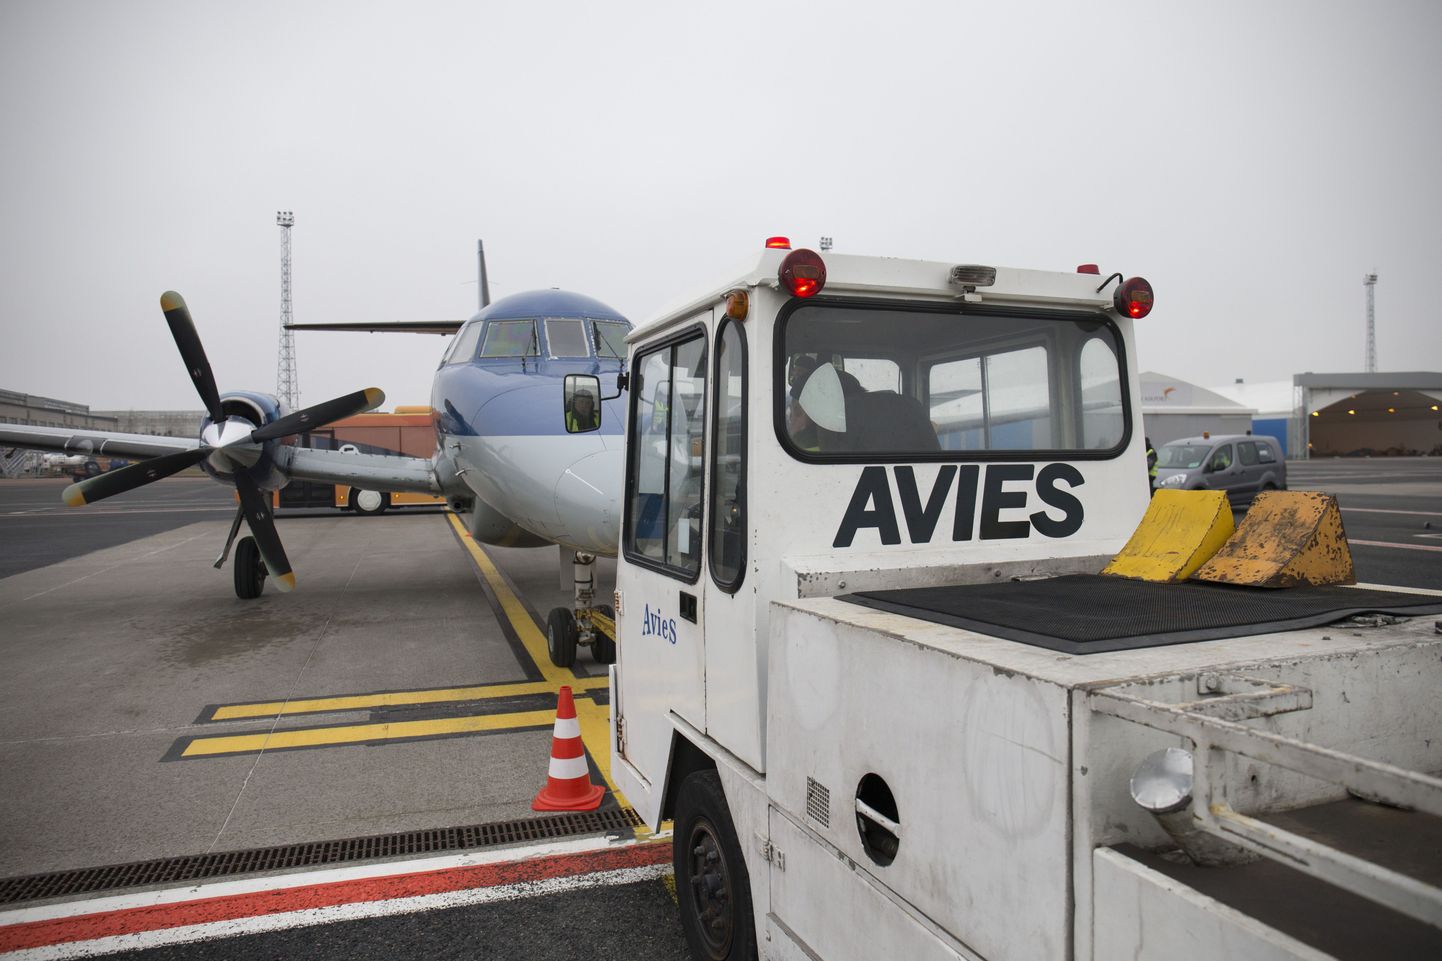 Lennuamet otsustas 1. aprillil peatada pankrotis kodumaise lennufirma Aviesi tegevusloa vähemalt kuueks kuuks.